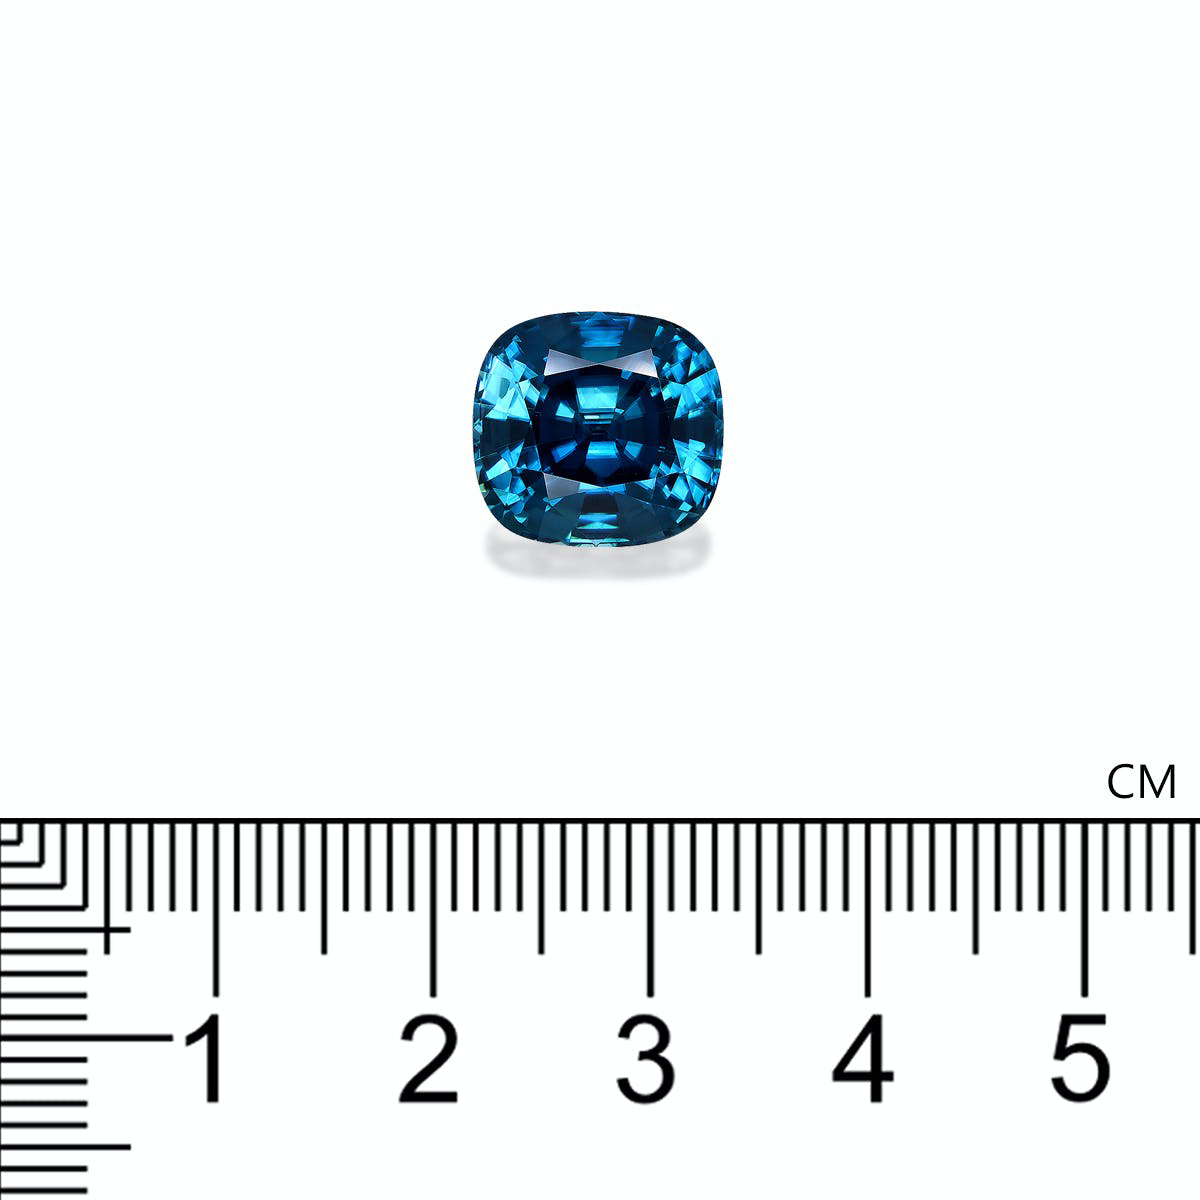 Cobalt Blue Zircon 10.58ct - 11mm (ZI0749)